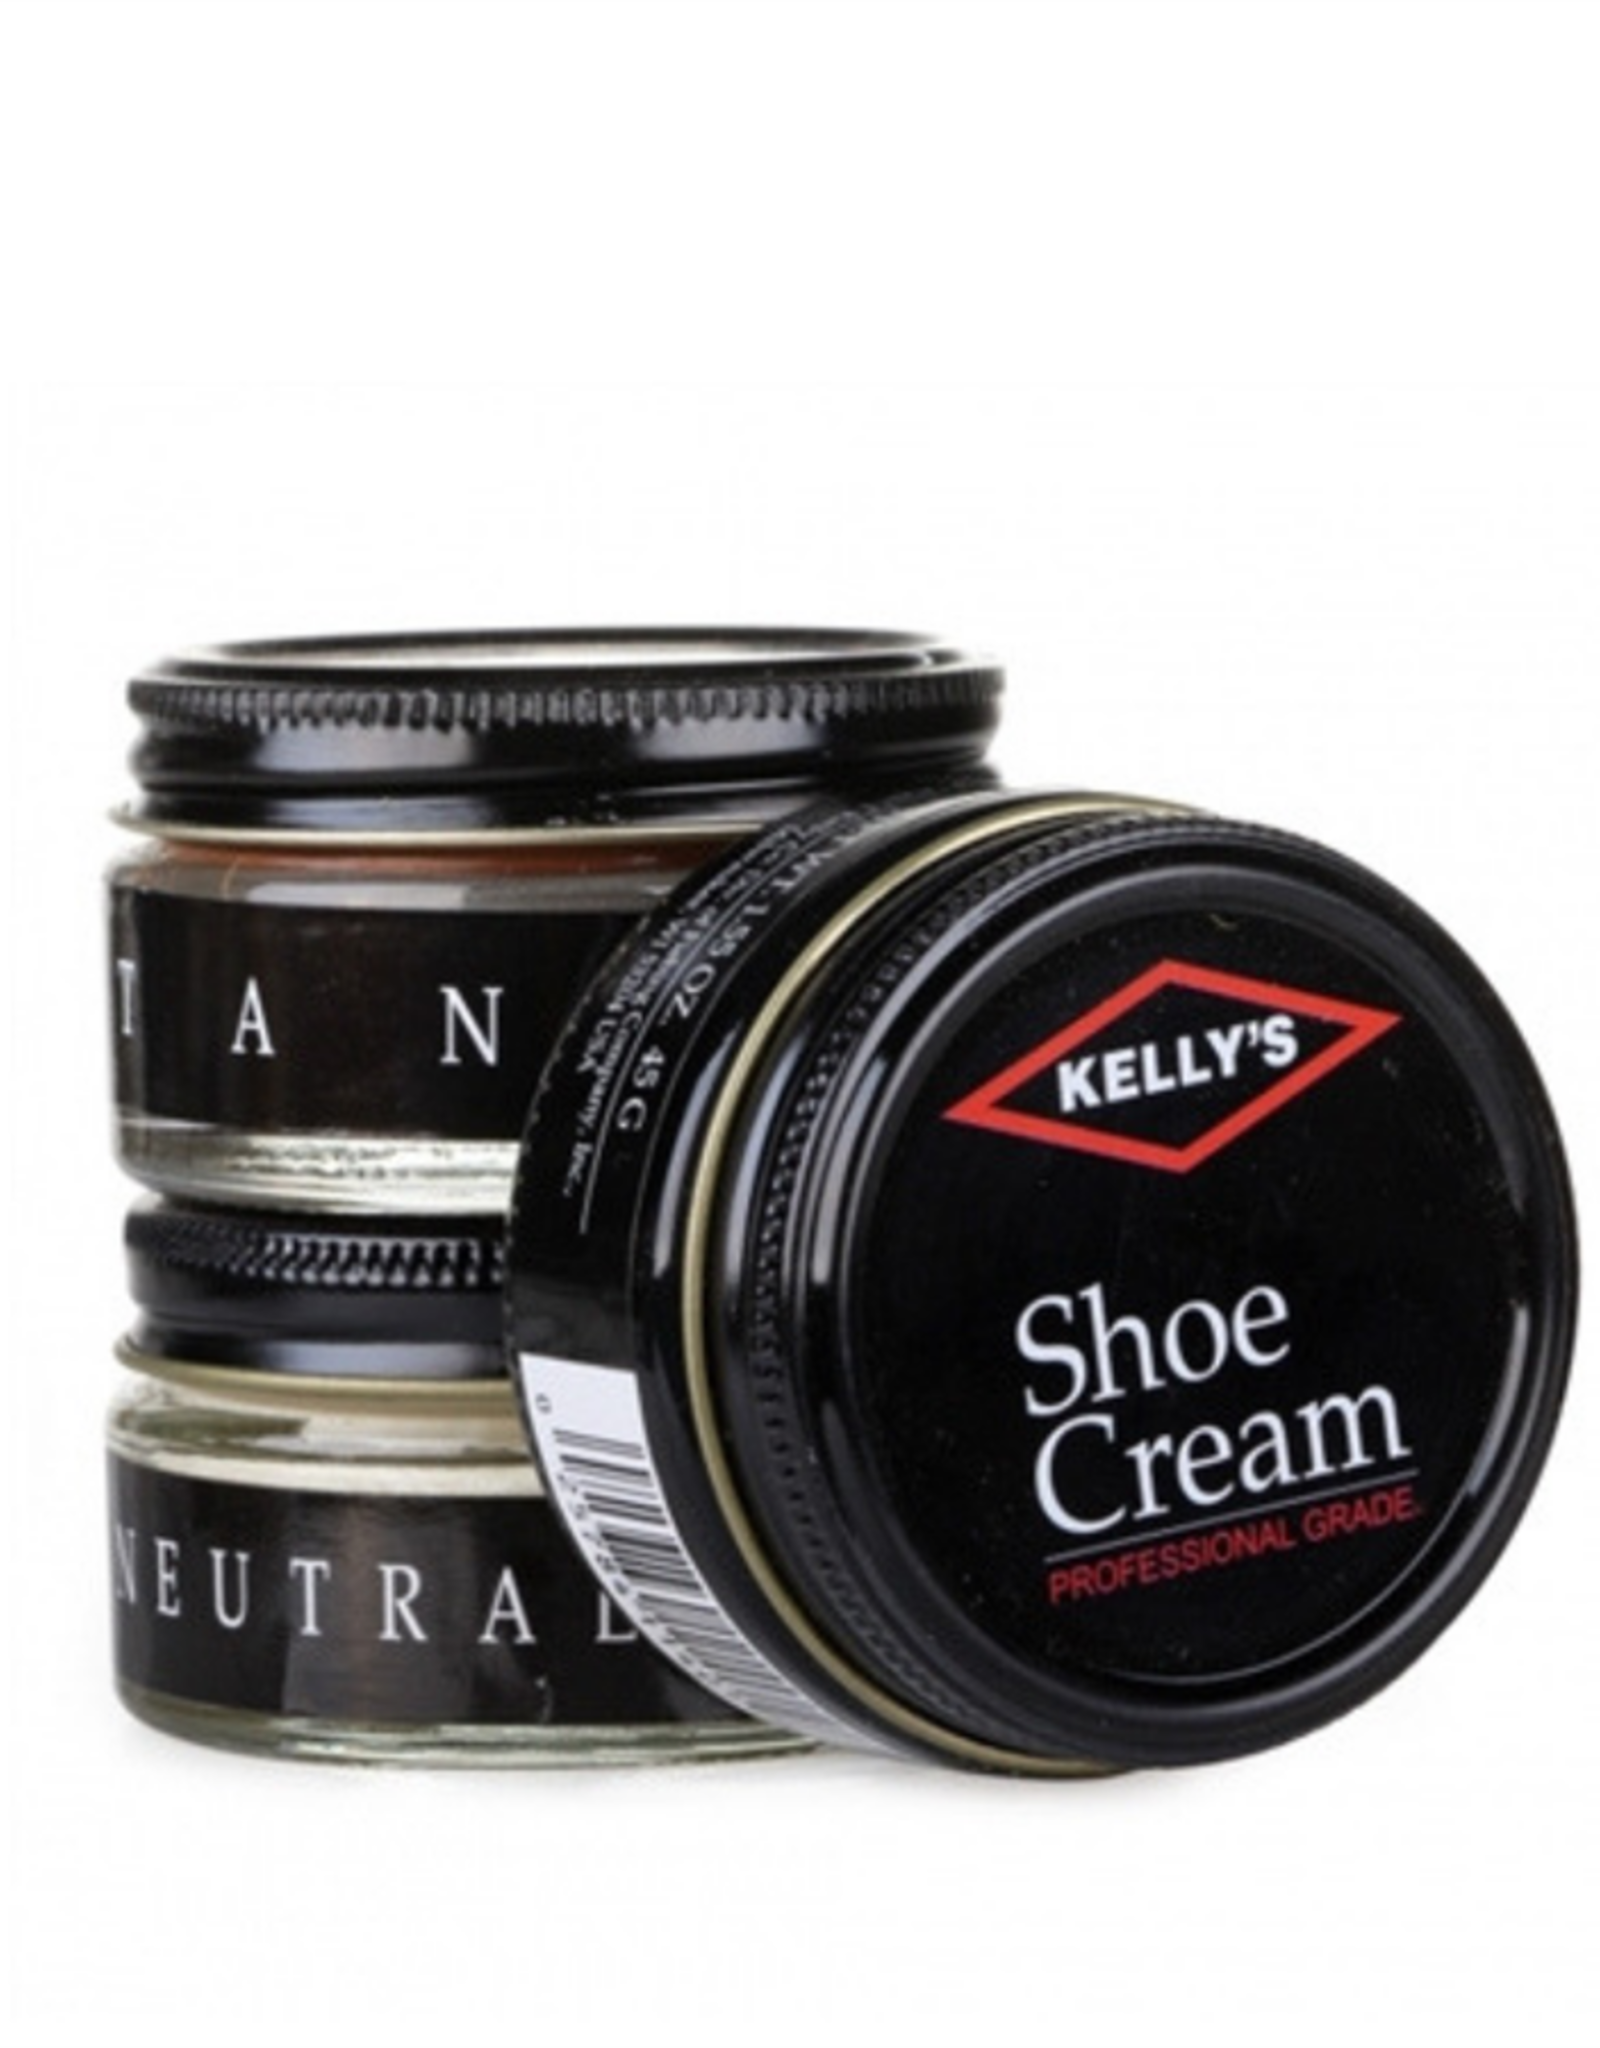 Kelly's Shoe Cream - 1.5oz